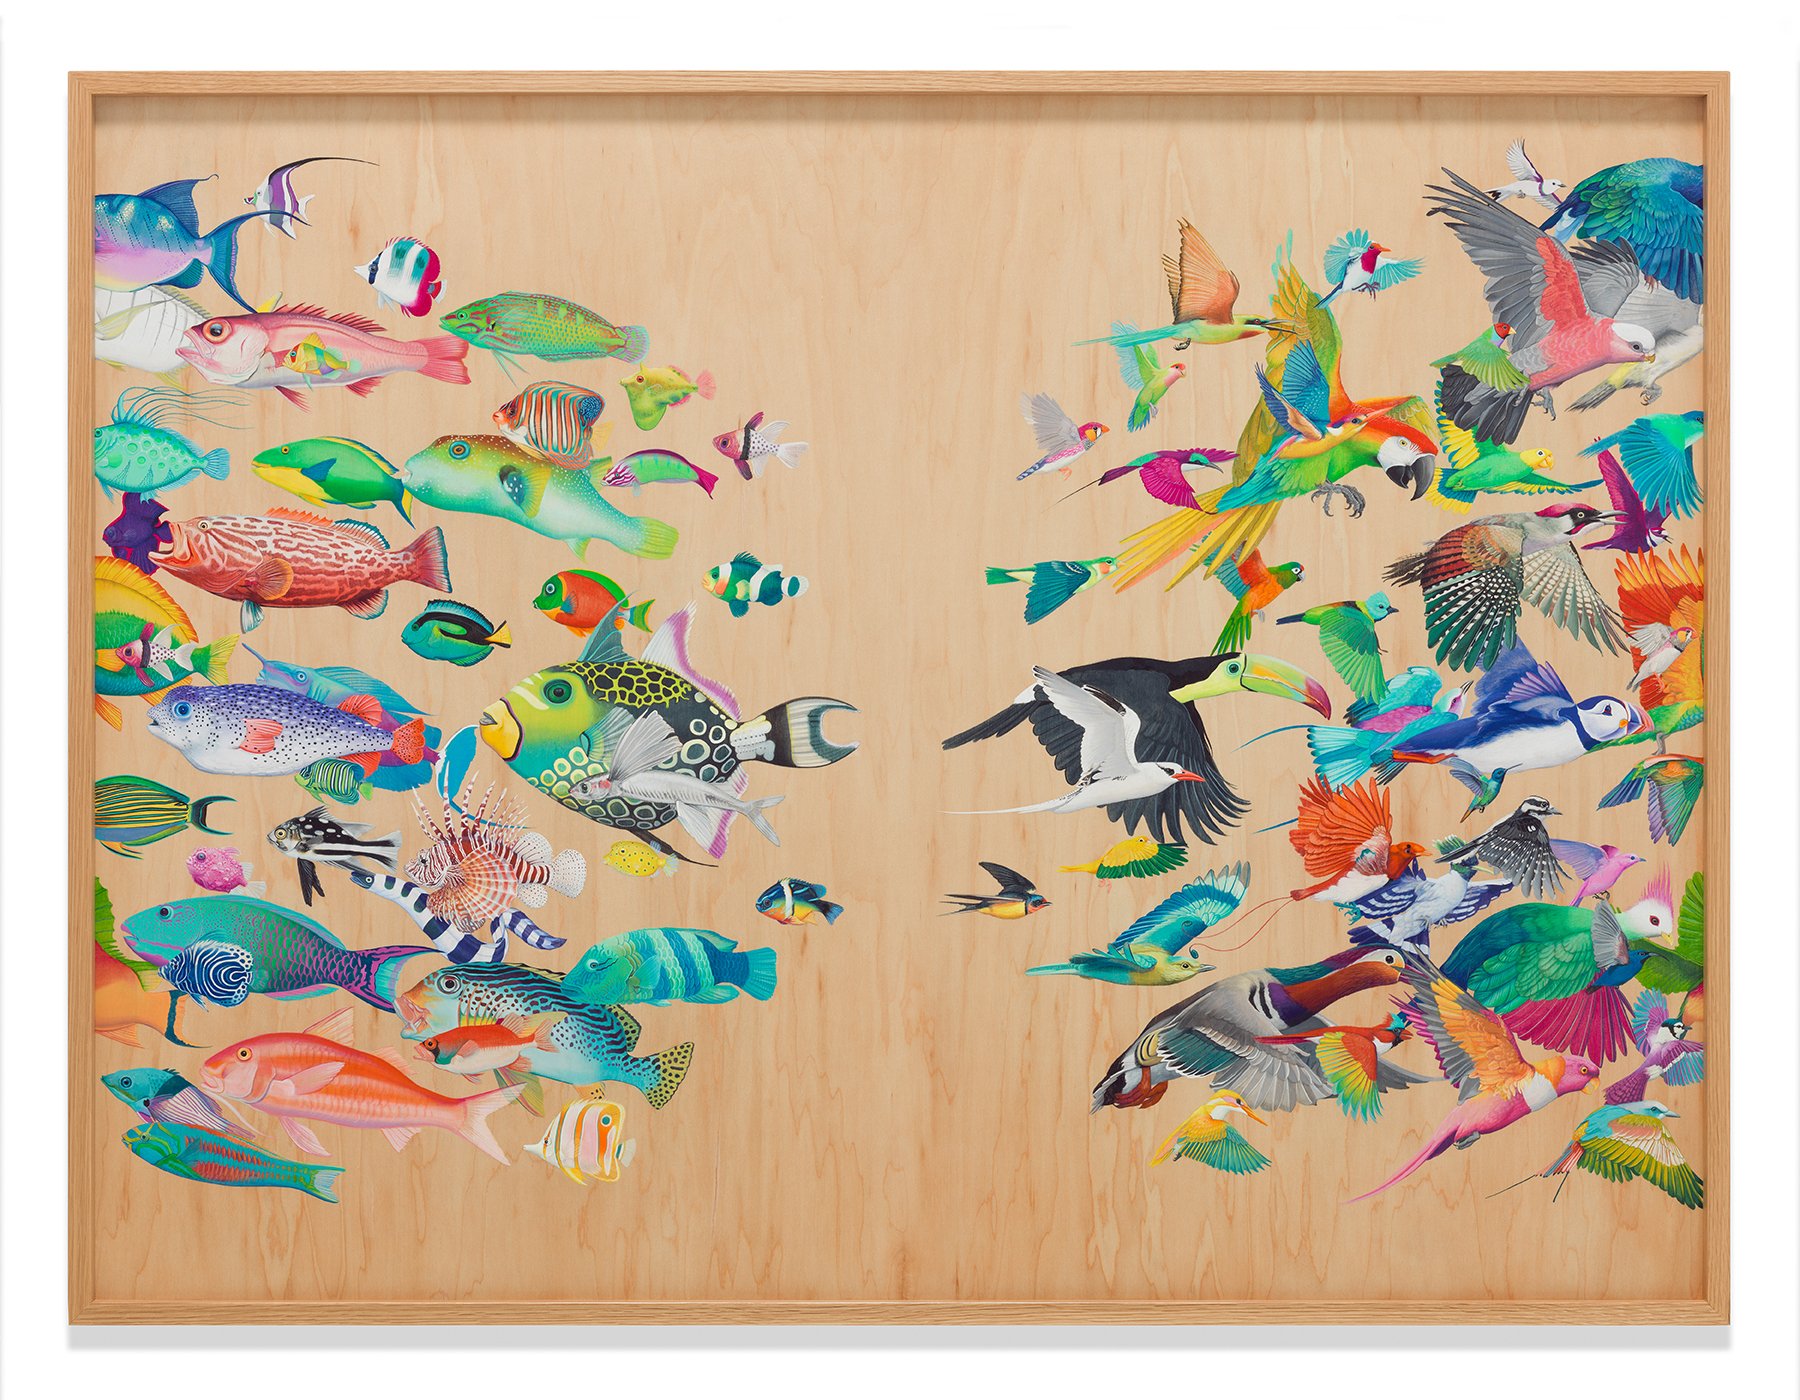 Play, 36” x 48” acrylic on maple panel, 2016 